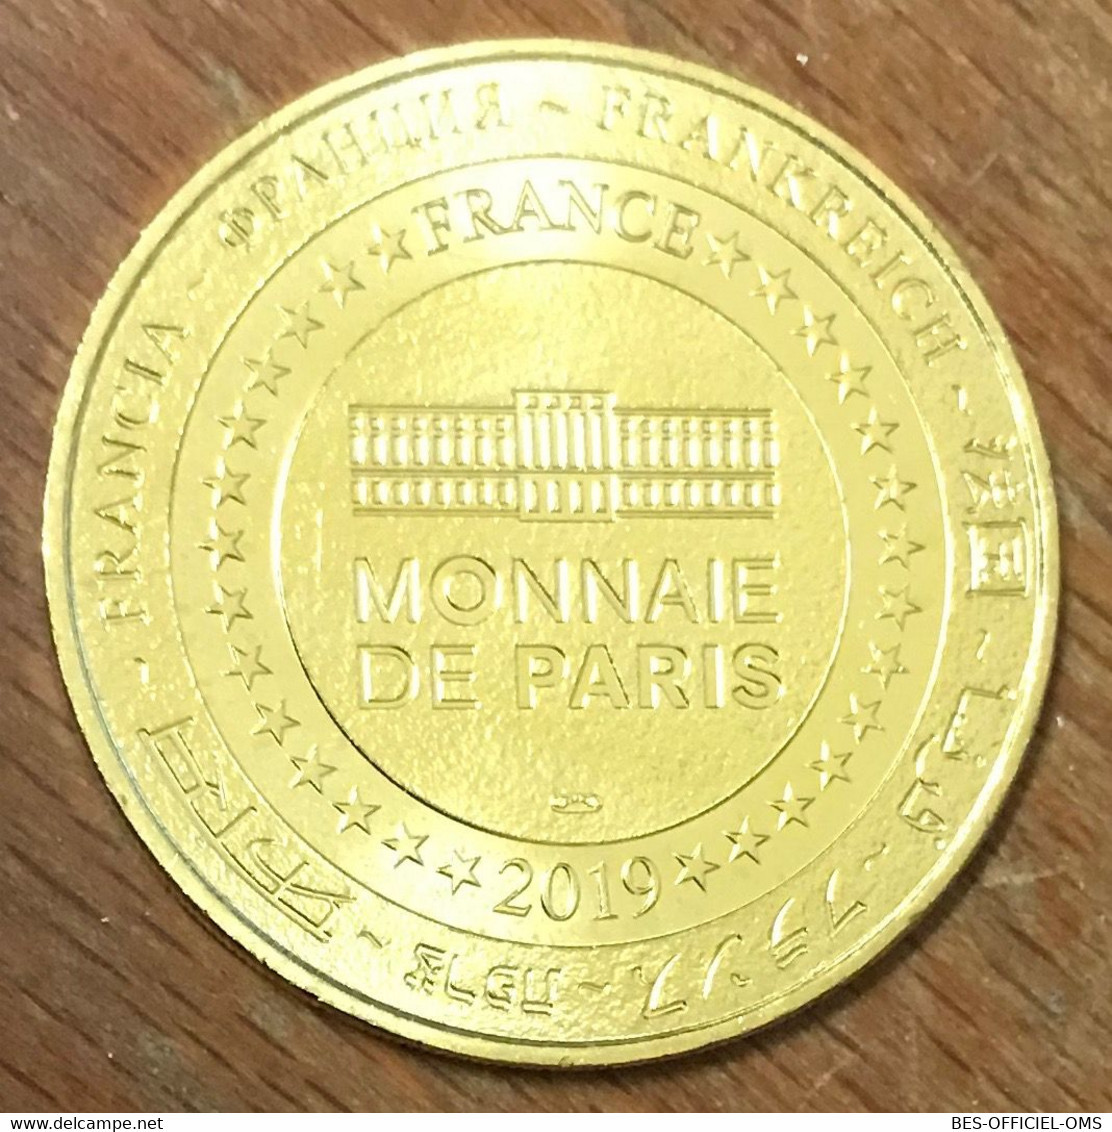 62 BOULOGNE SUR MER REQUIN TAUREAU NAUSICAÄ MDP 2019 MEDAILLE MONNAIE DE PARIS JETON TOURISTIQUE MEDALS COINS TOKENS - 2019